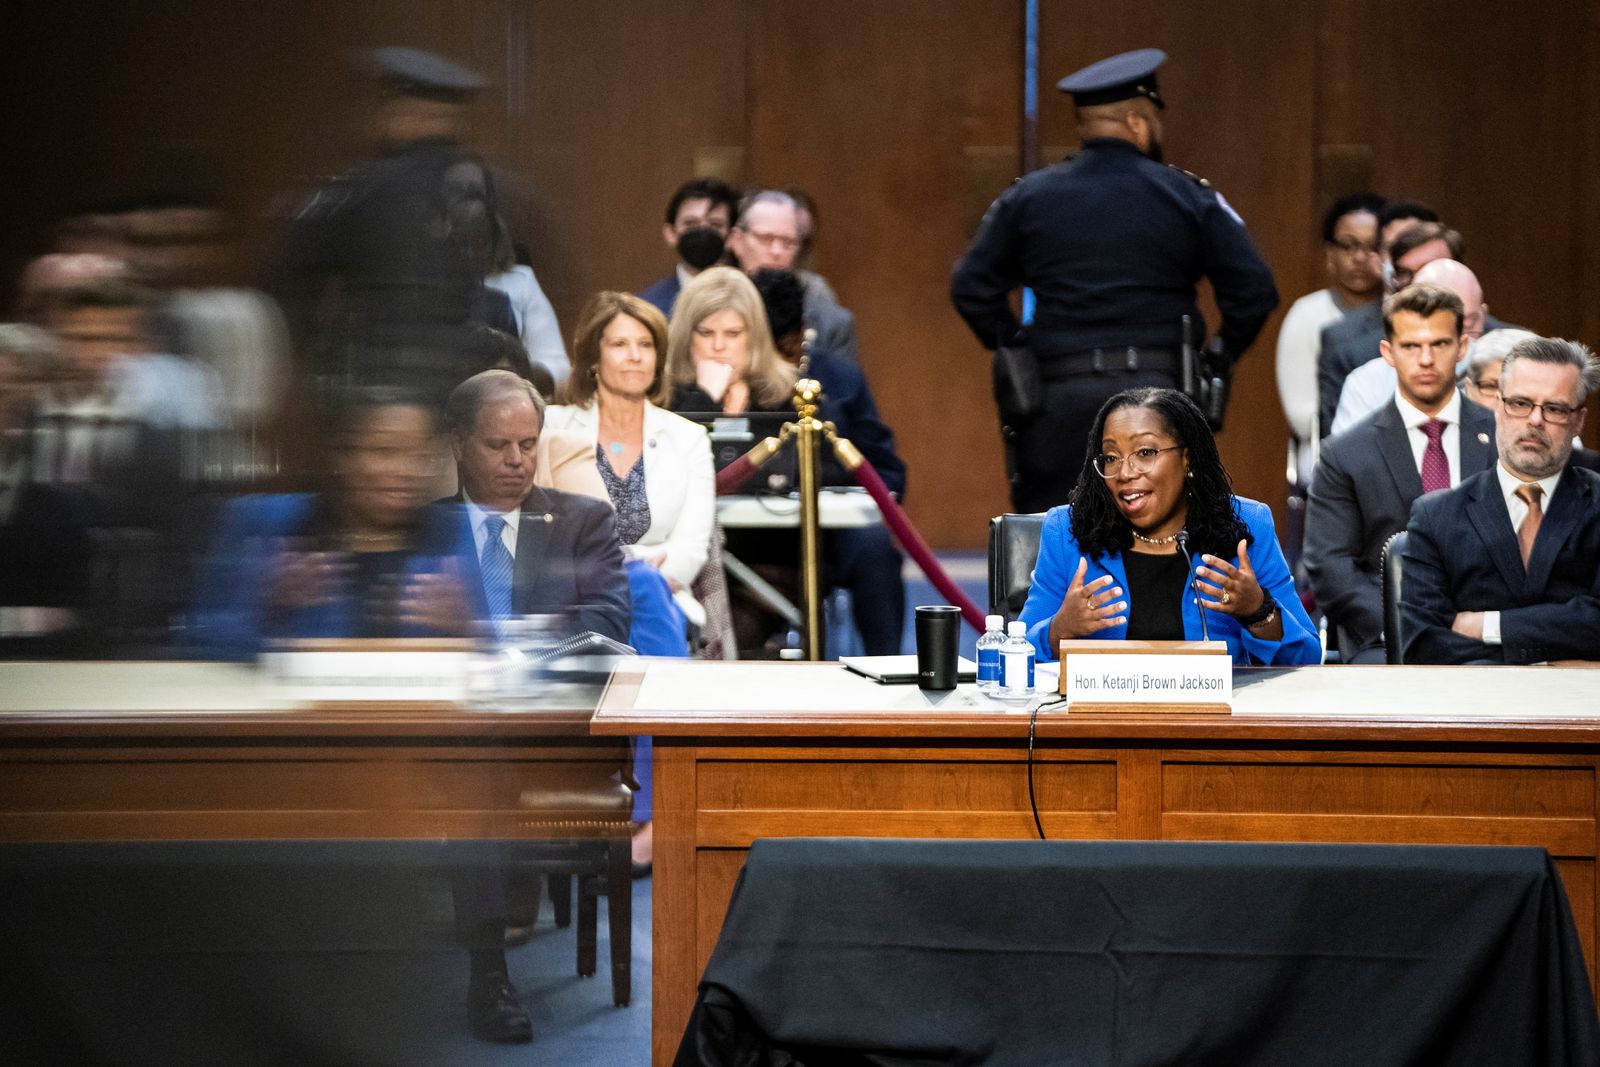 القاضية الأميركية من أصل إفريقي كيتانجي براون جاكسون خلال جلسة الاستماع أمام اللجنة القضائية بمجلس الشيوخ الأميركي - 24 مارس 2022 - REUTERS